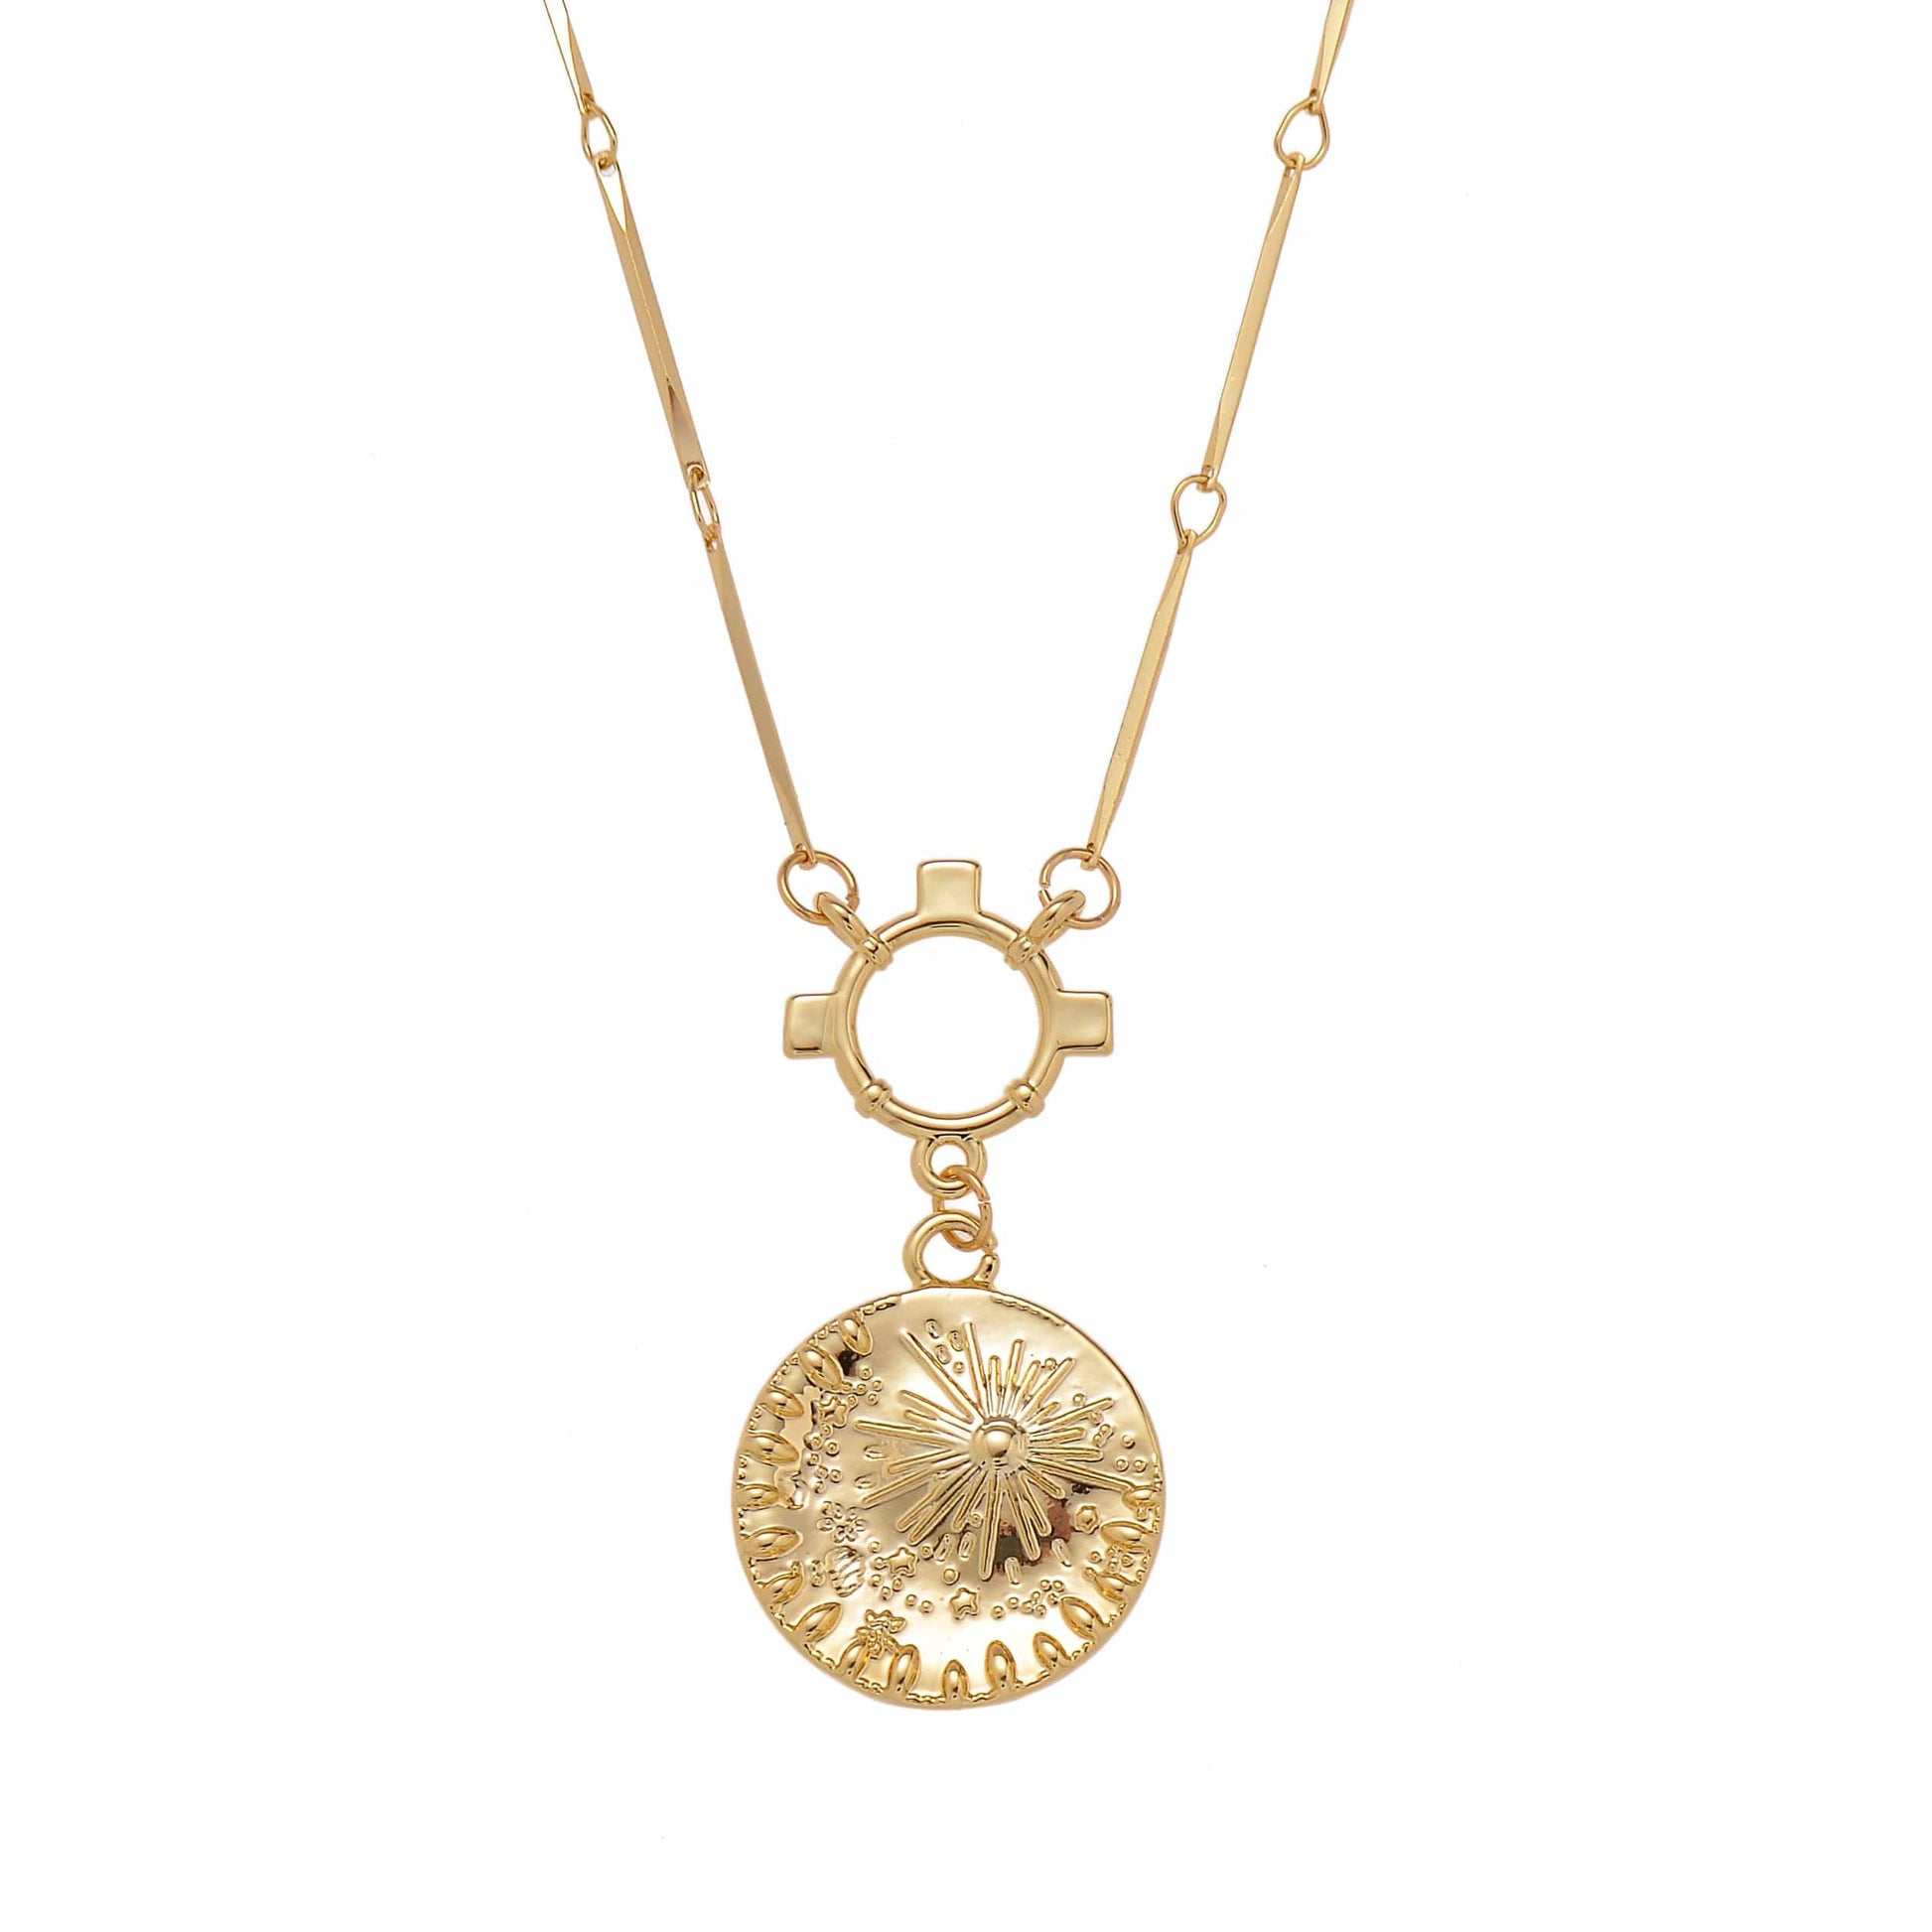 Supernova gold coin engraved pendant